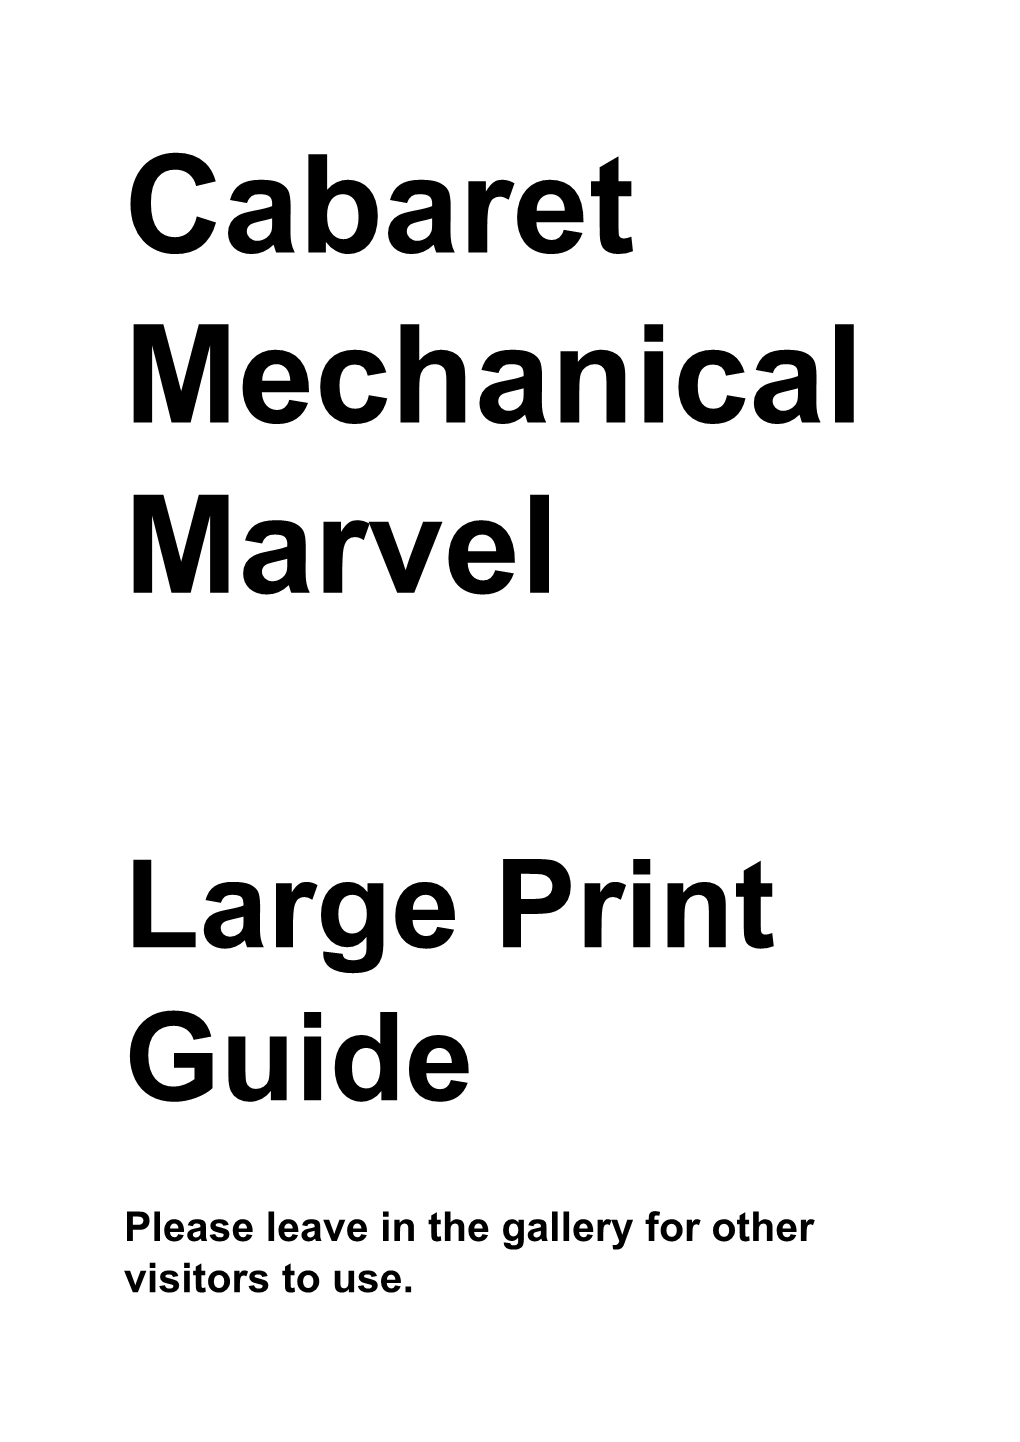 Cabaret Mechanical Marvels